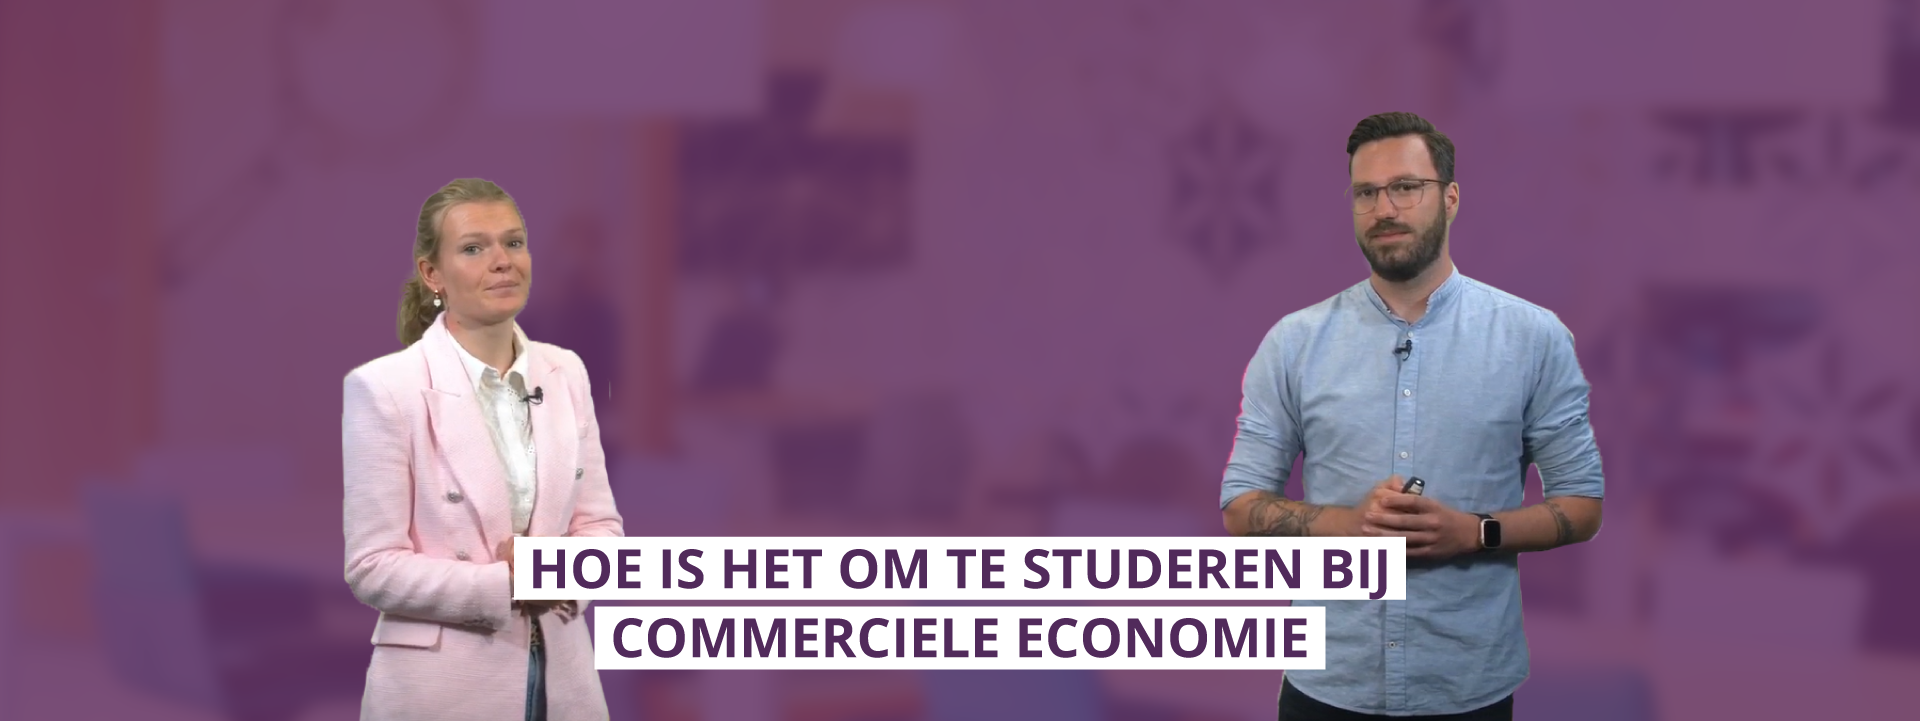 Hoe is het om te studeren bij Commerciële Economie in Eindhoven?